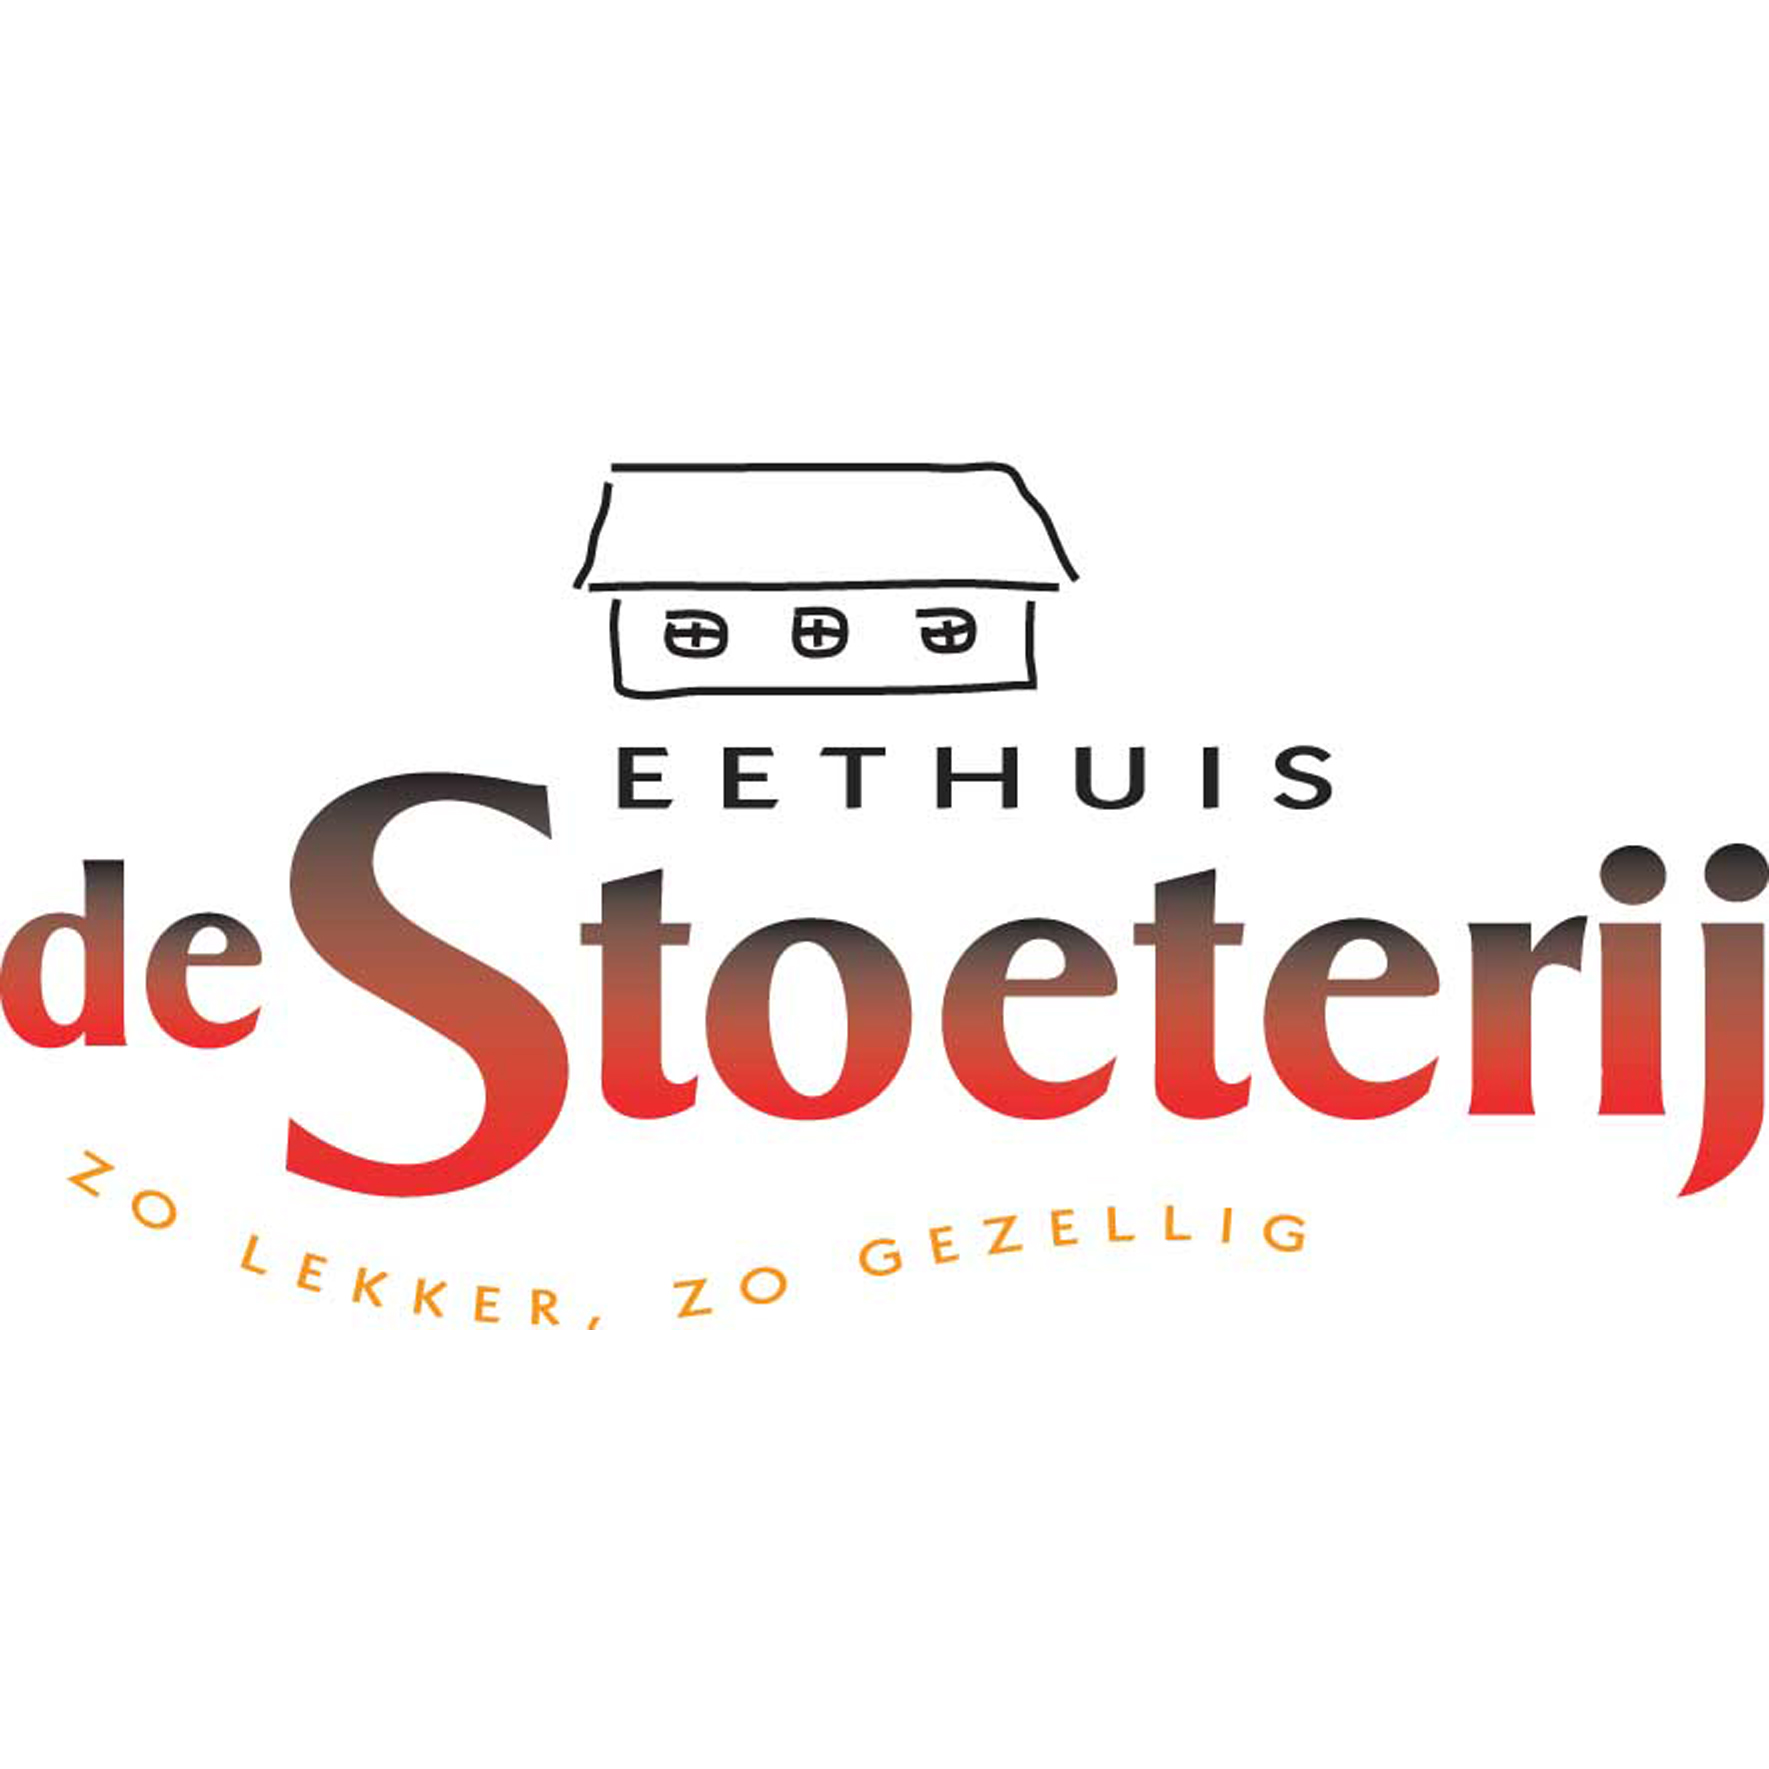 Restaurant Eethuis De Stoeterij - Restaurant - Soesterberg - 033 463 3175 Netherlands | ShowMeLocal.com